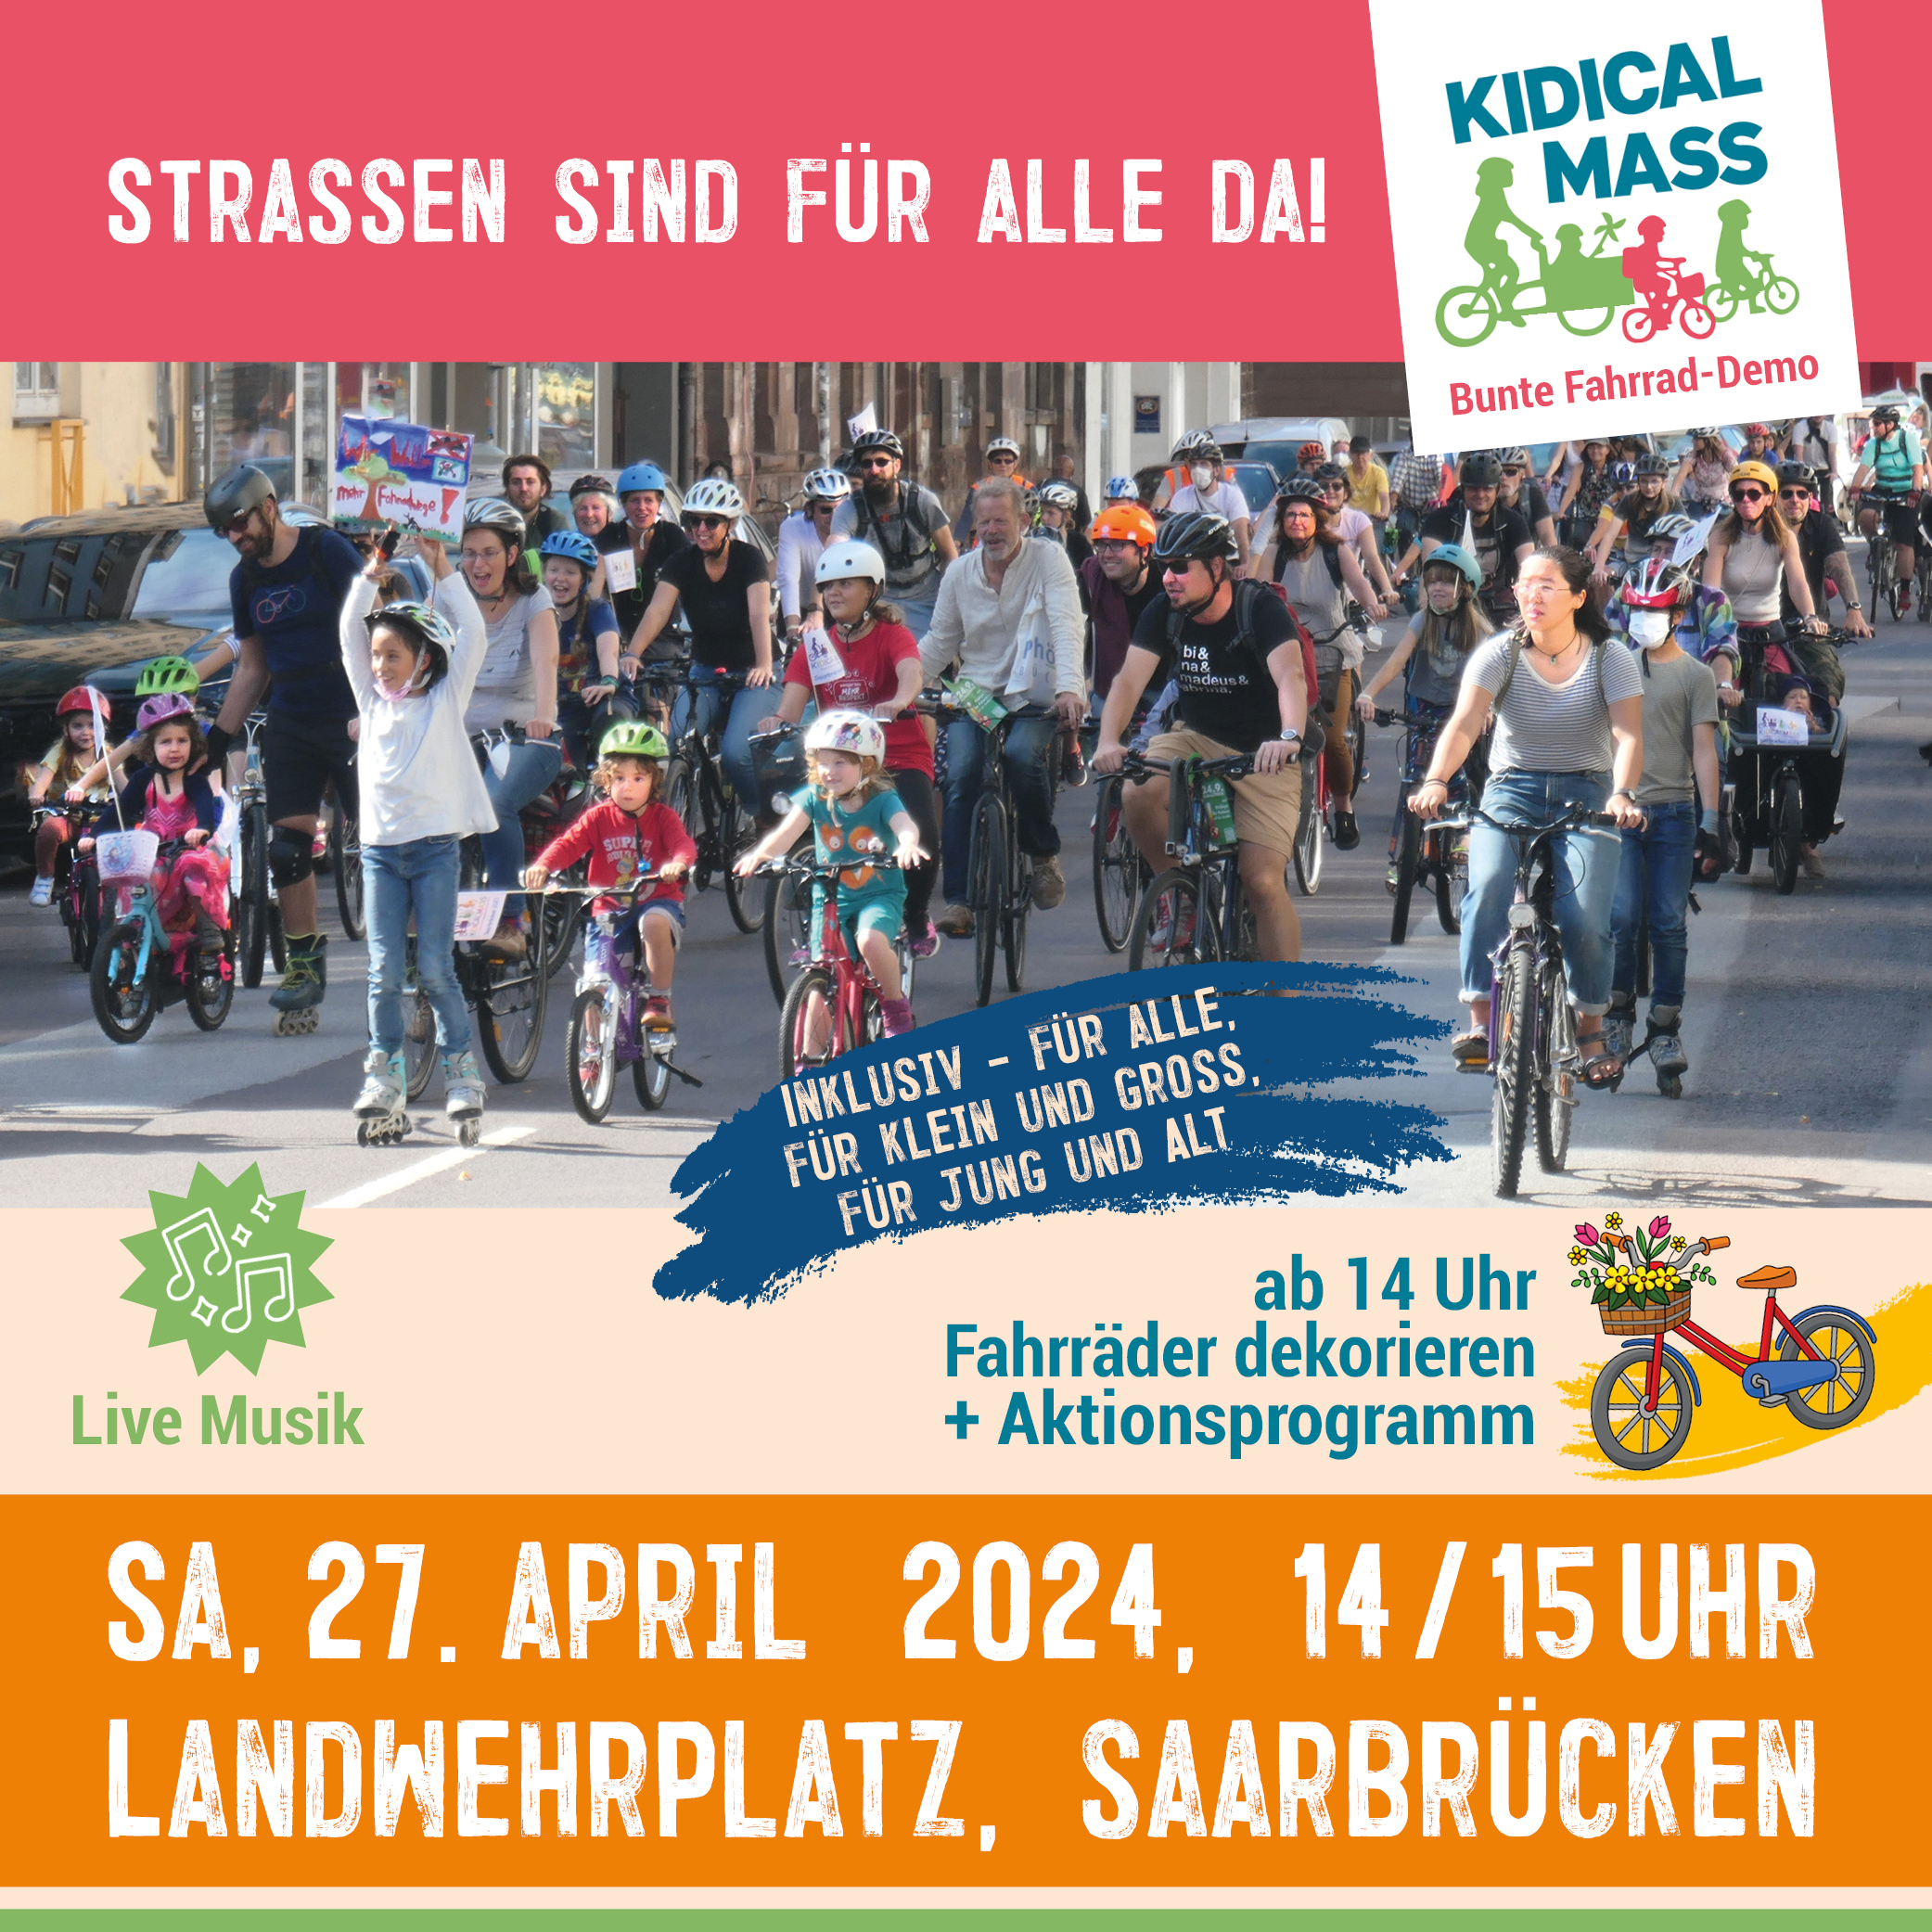 ADFC Saarland, Greenpeace Saar, Fridays for Future Saarland, Saarland for Future